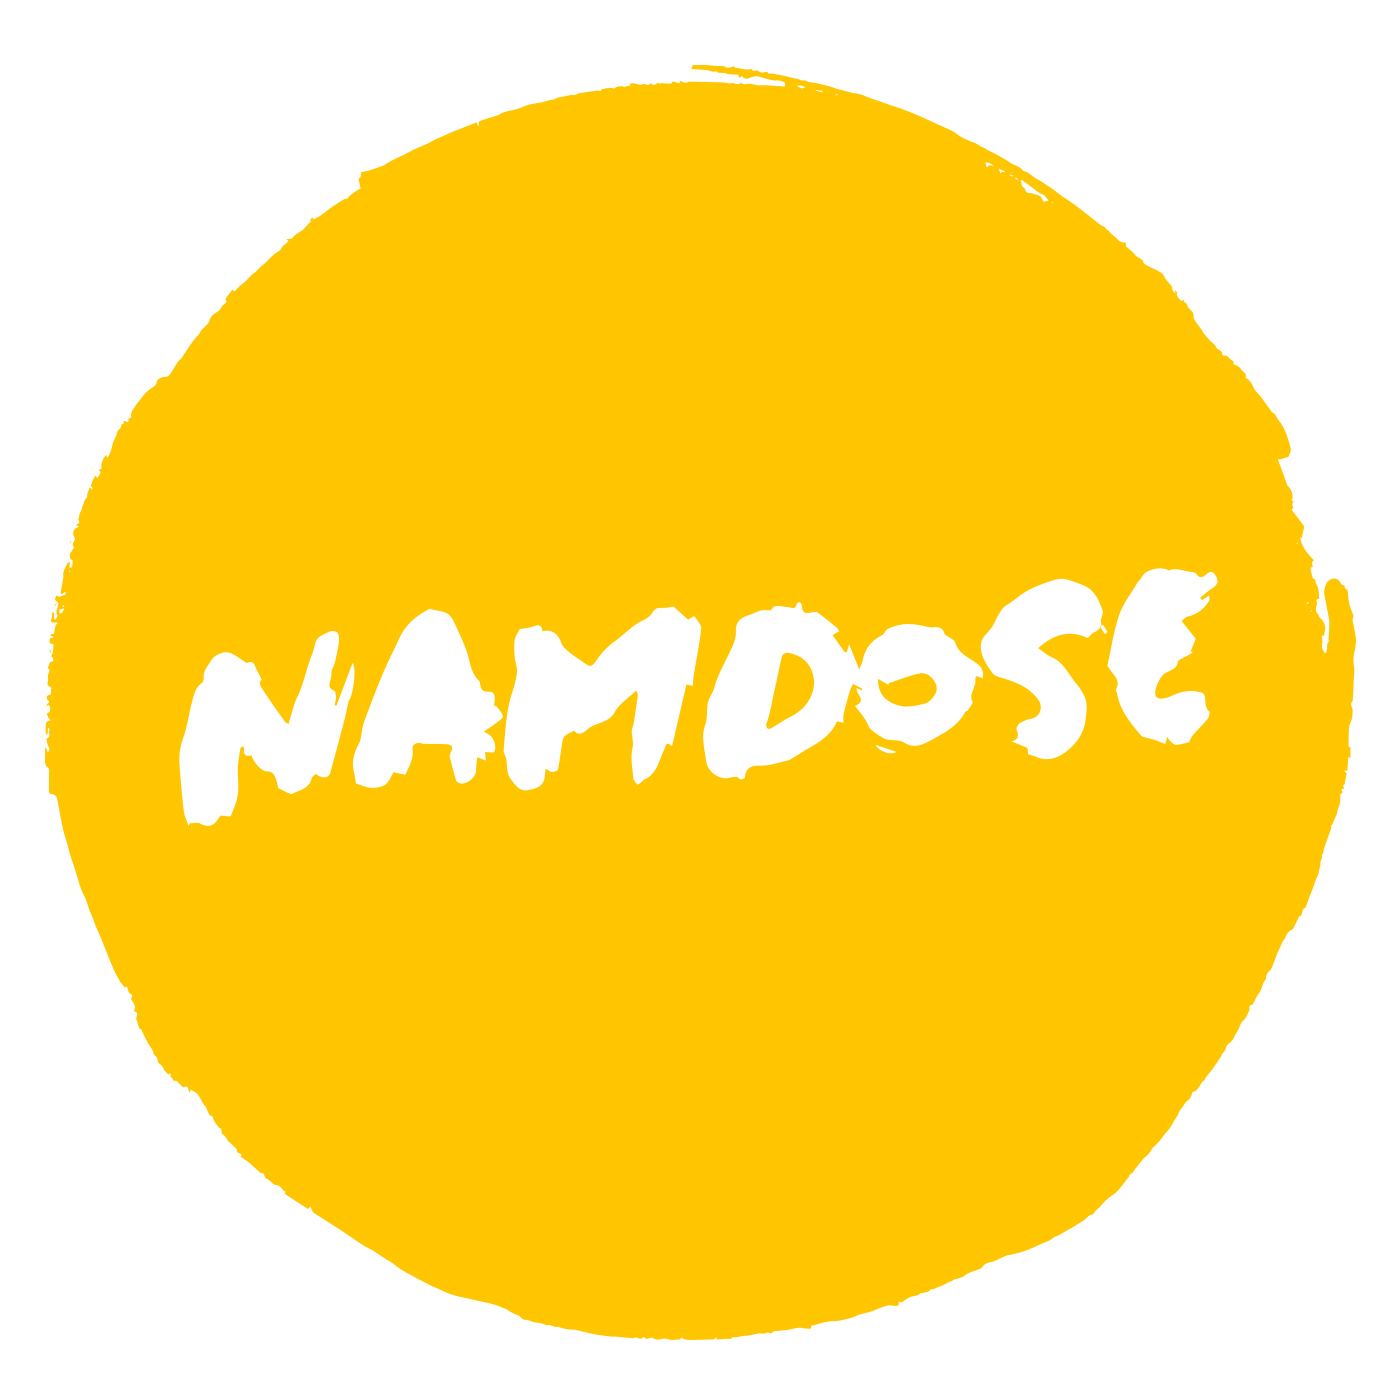 namdose-premier-album-chronique